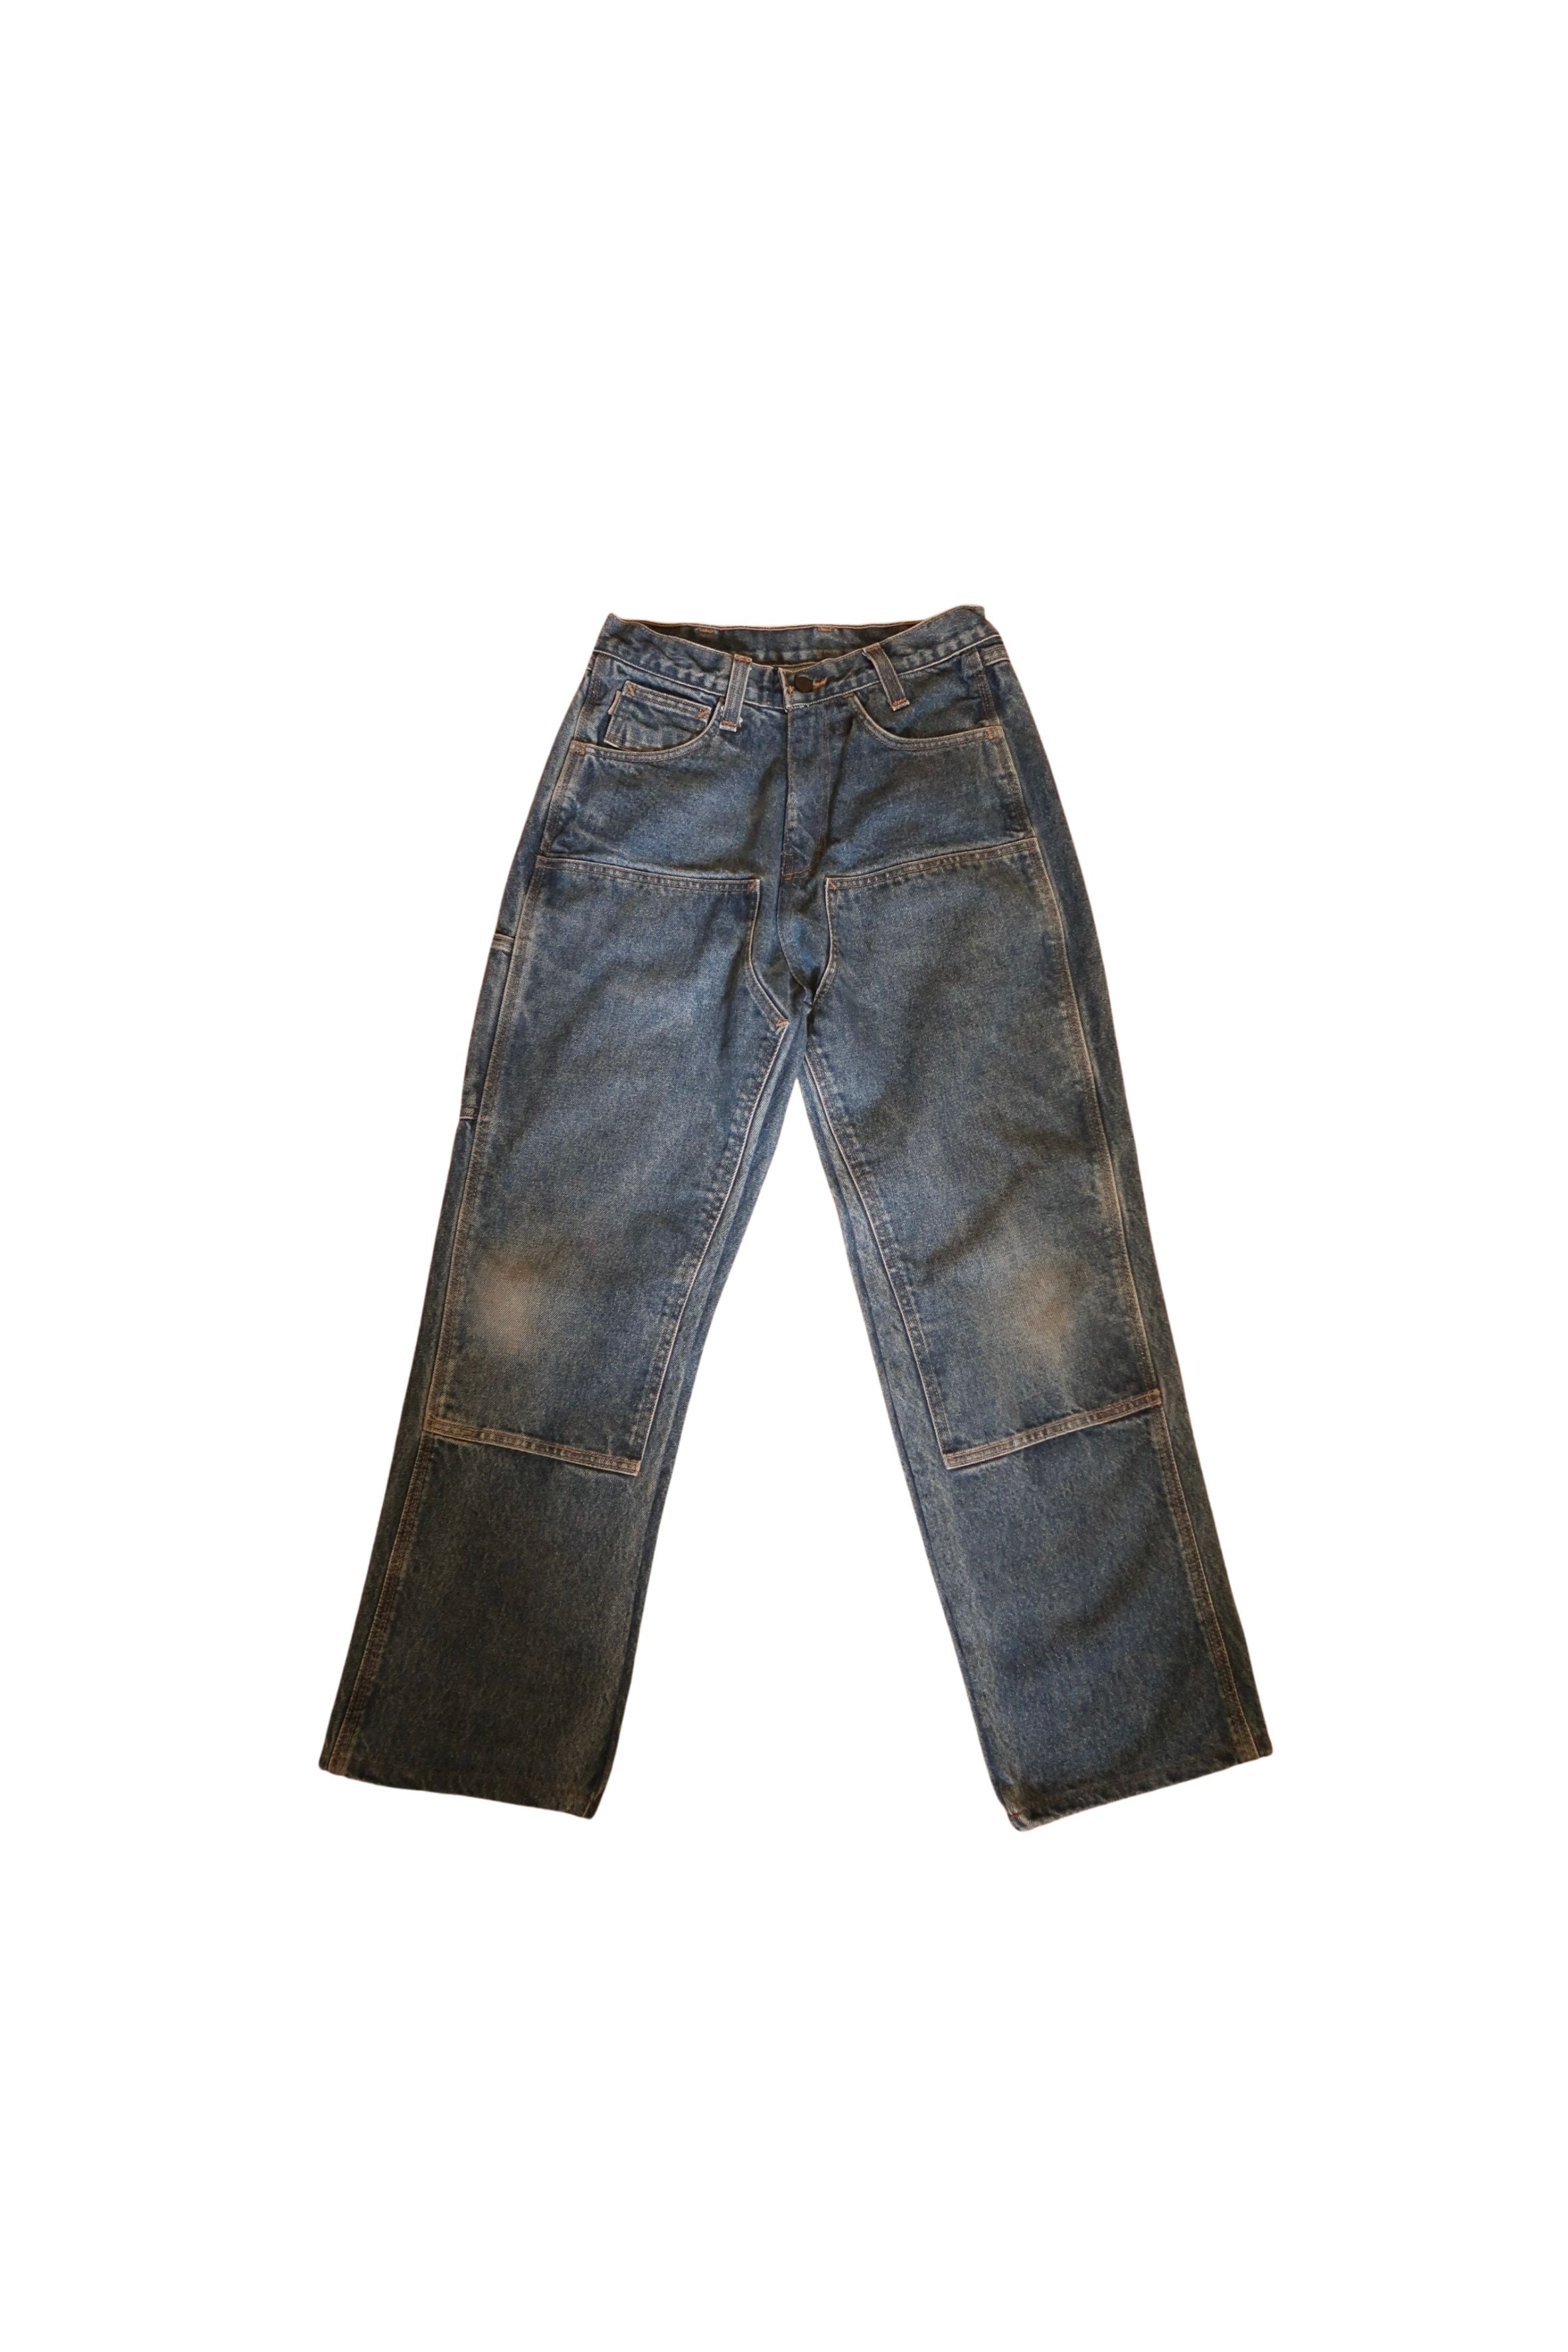 Vintage Carhartt Double Knee Denim Carpenter Pants Size: 28 X 30